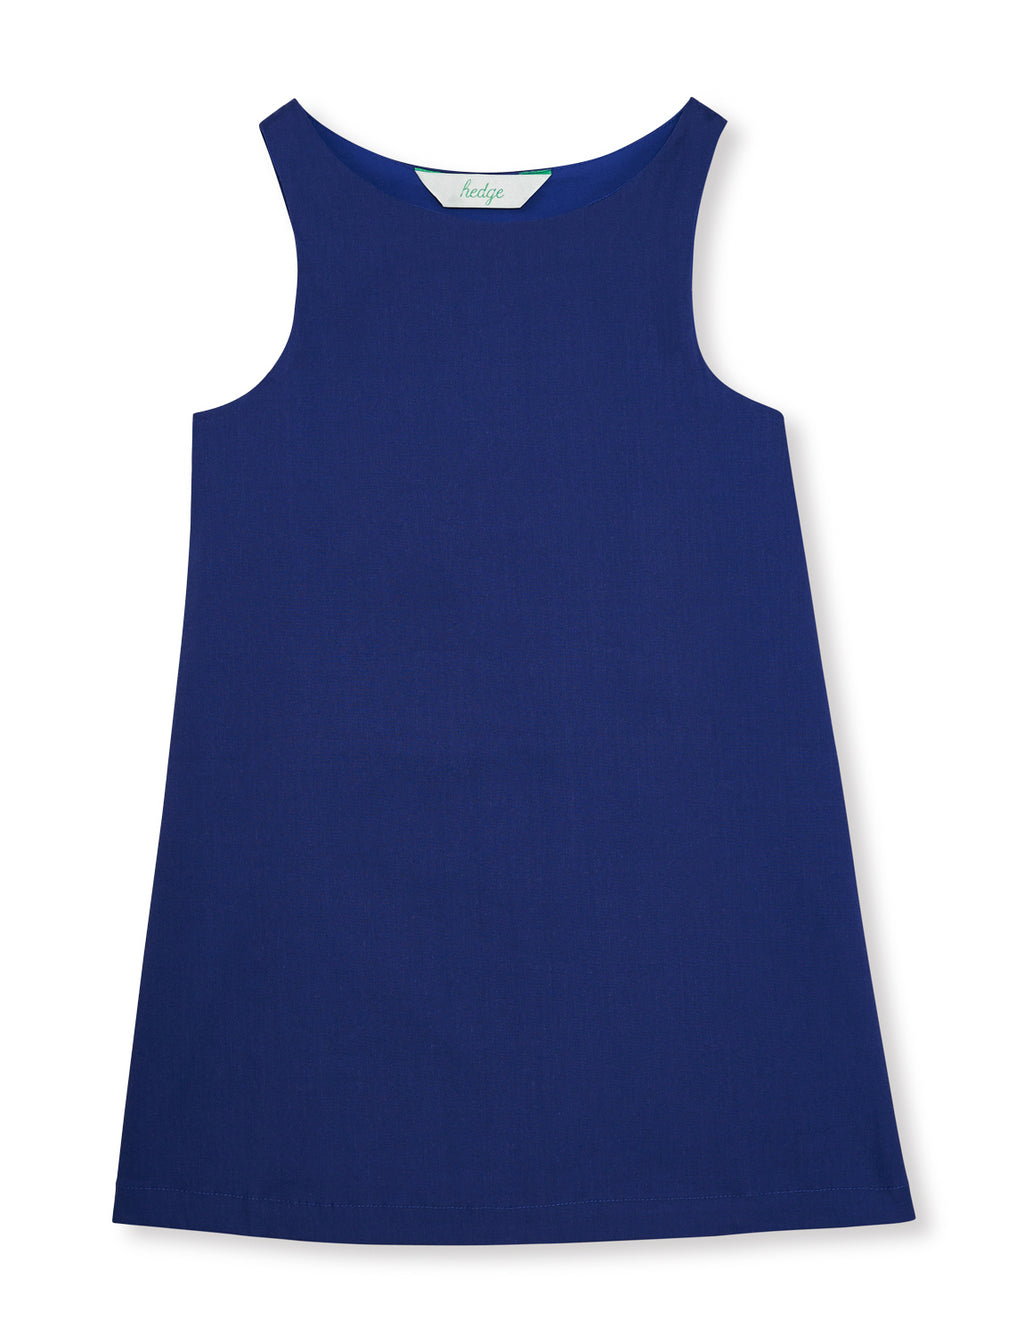 lightweight summer dress for girls – HEDGE